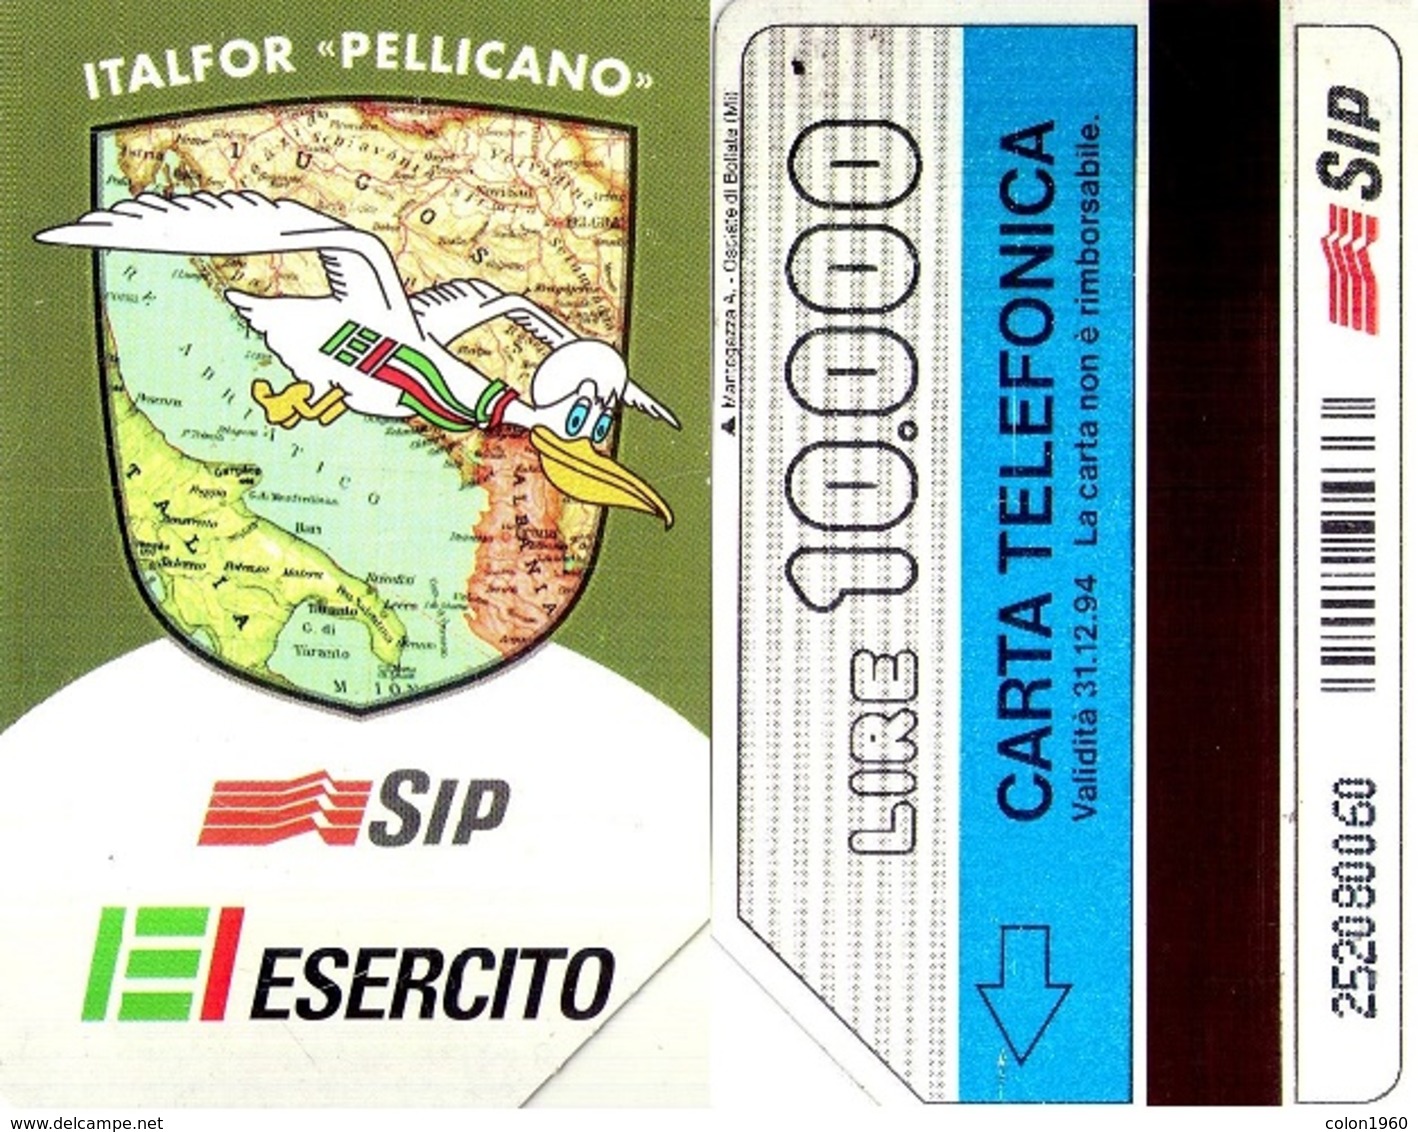 TARJETA TELEFONICA DE ITALIA. ITALFOR "PELLICANO", EJERCITO, 31-12-94. 10000L. 2290. (123) - Leger